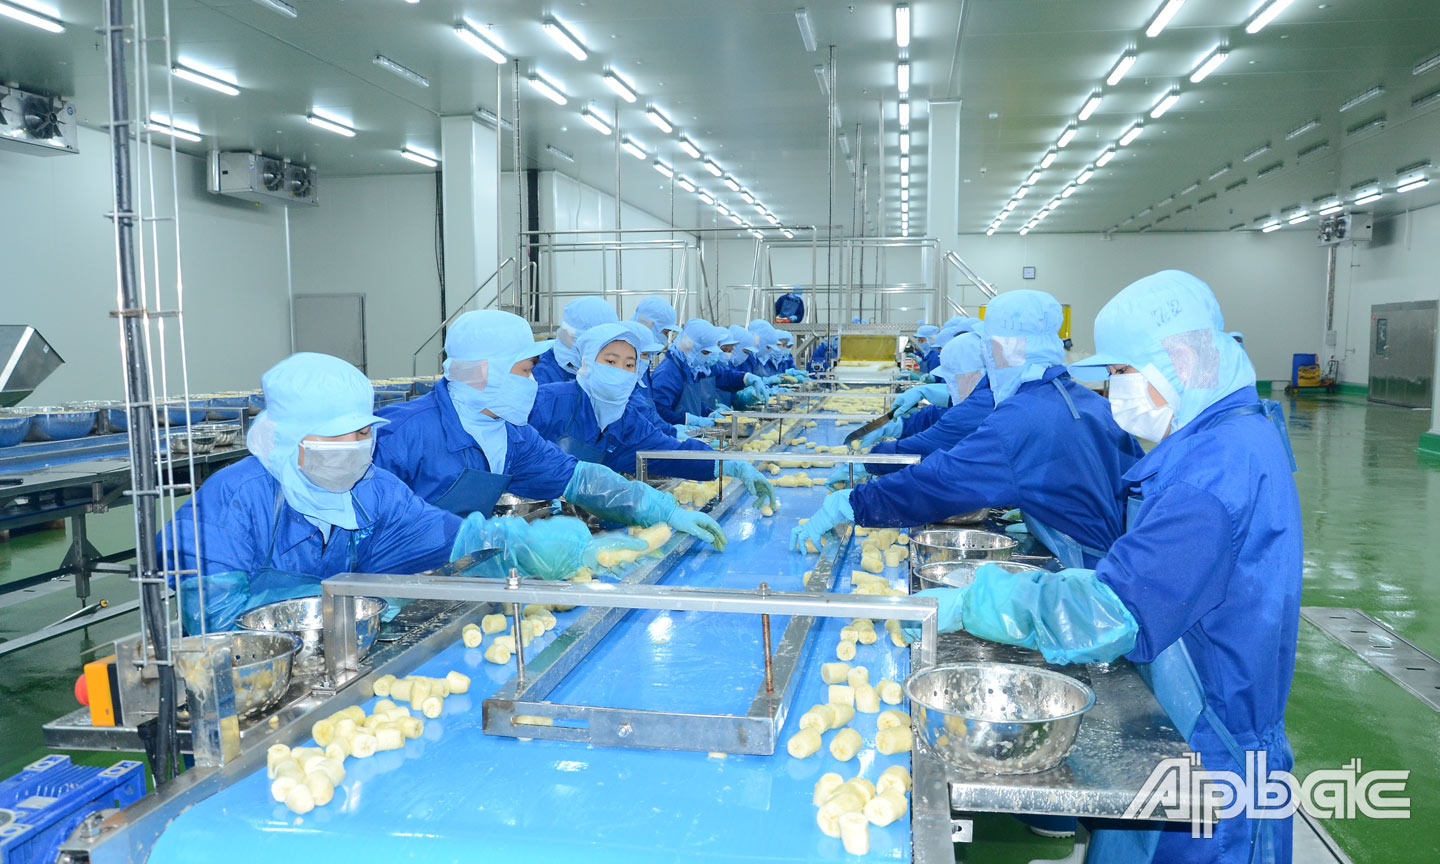 Dây chuyền chế biến rau quả cấp đông của Nhà máy chế biến nông sản của Công ty Cổ phần Công nghiệp thực phẩm Thabico tại xã Bình Ninh, huyện Chợ Gạo, tỉnh Tiền Giang.                                                                                            Ảnh: MINH THÀNH